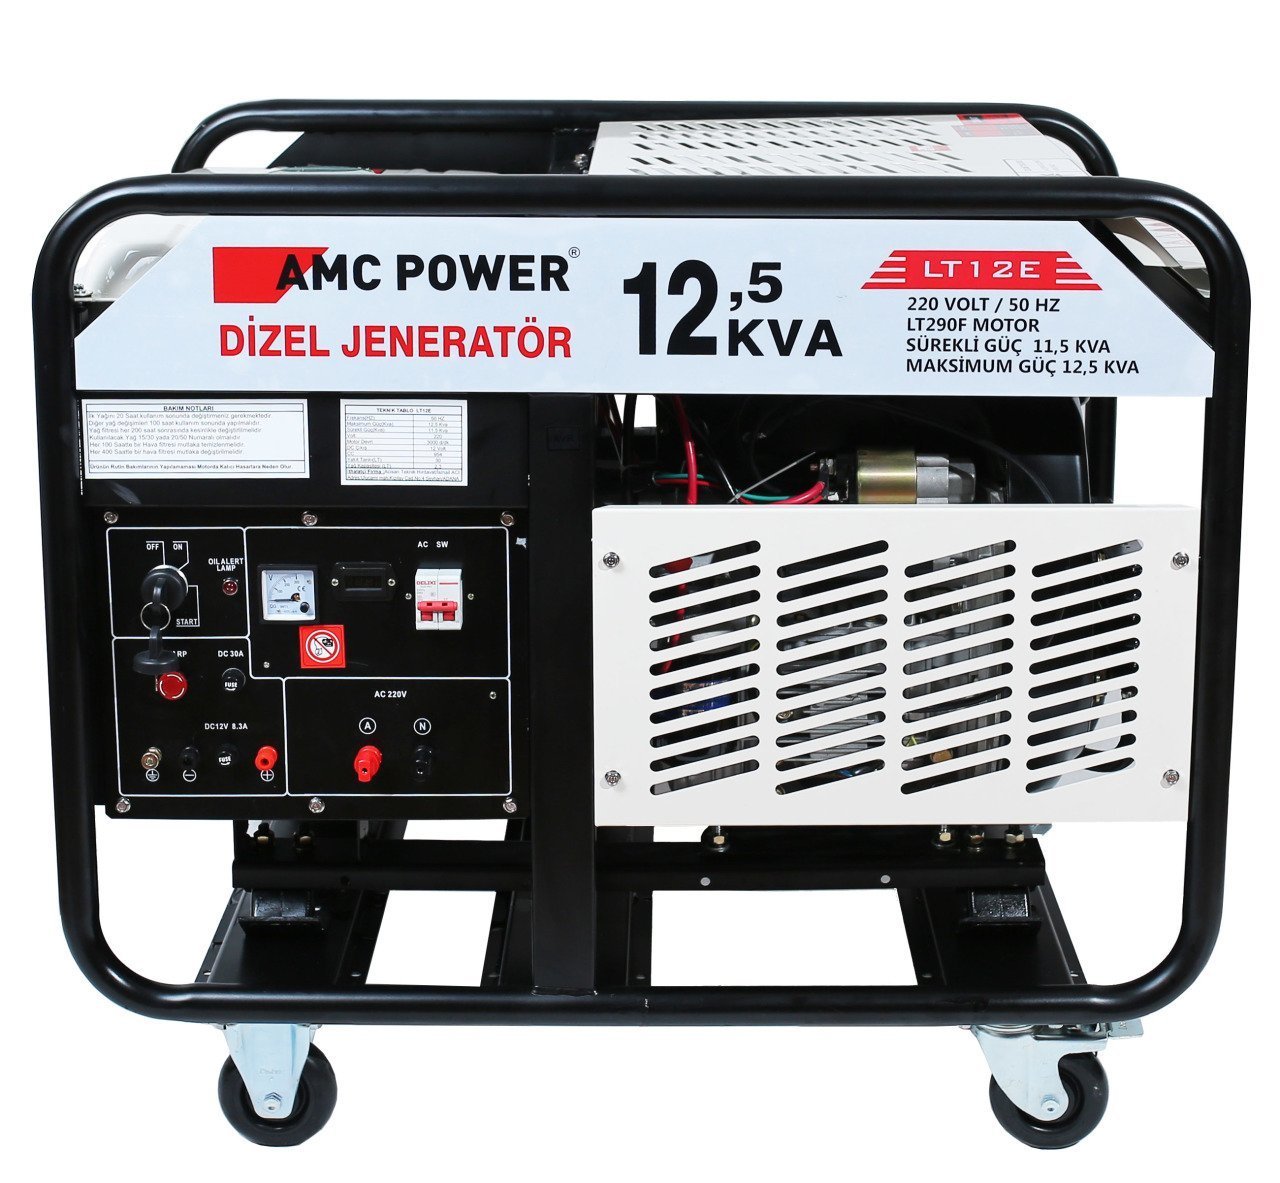 AMC Power LT12E Dizel Jeneratör 12,5 kVA 220 Volt